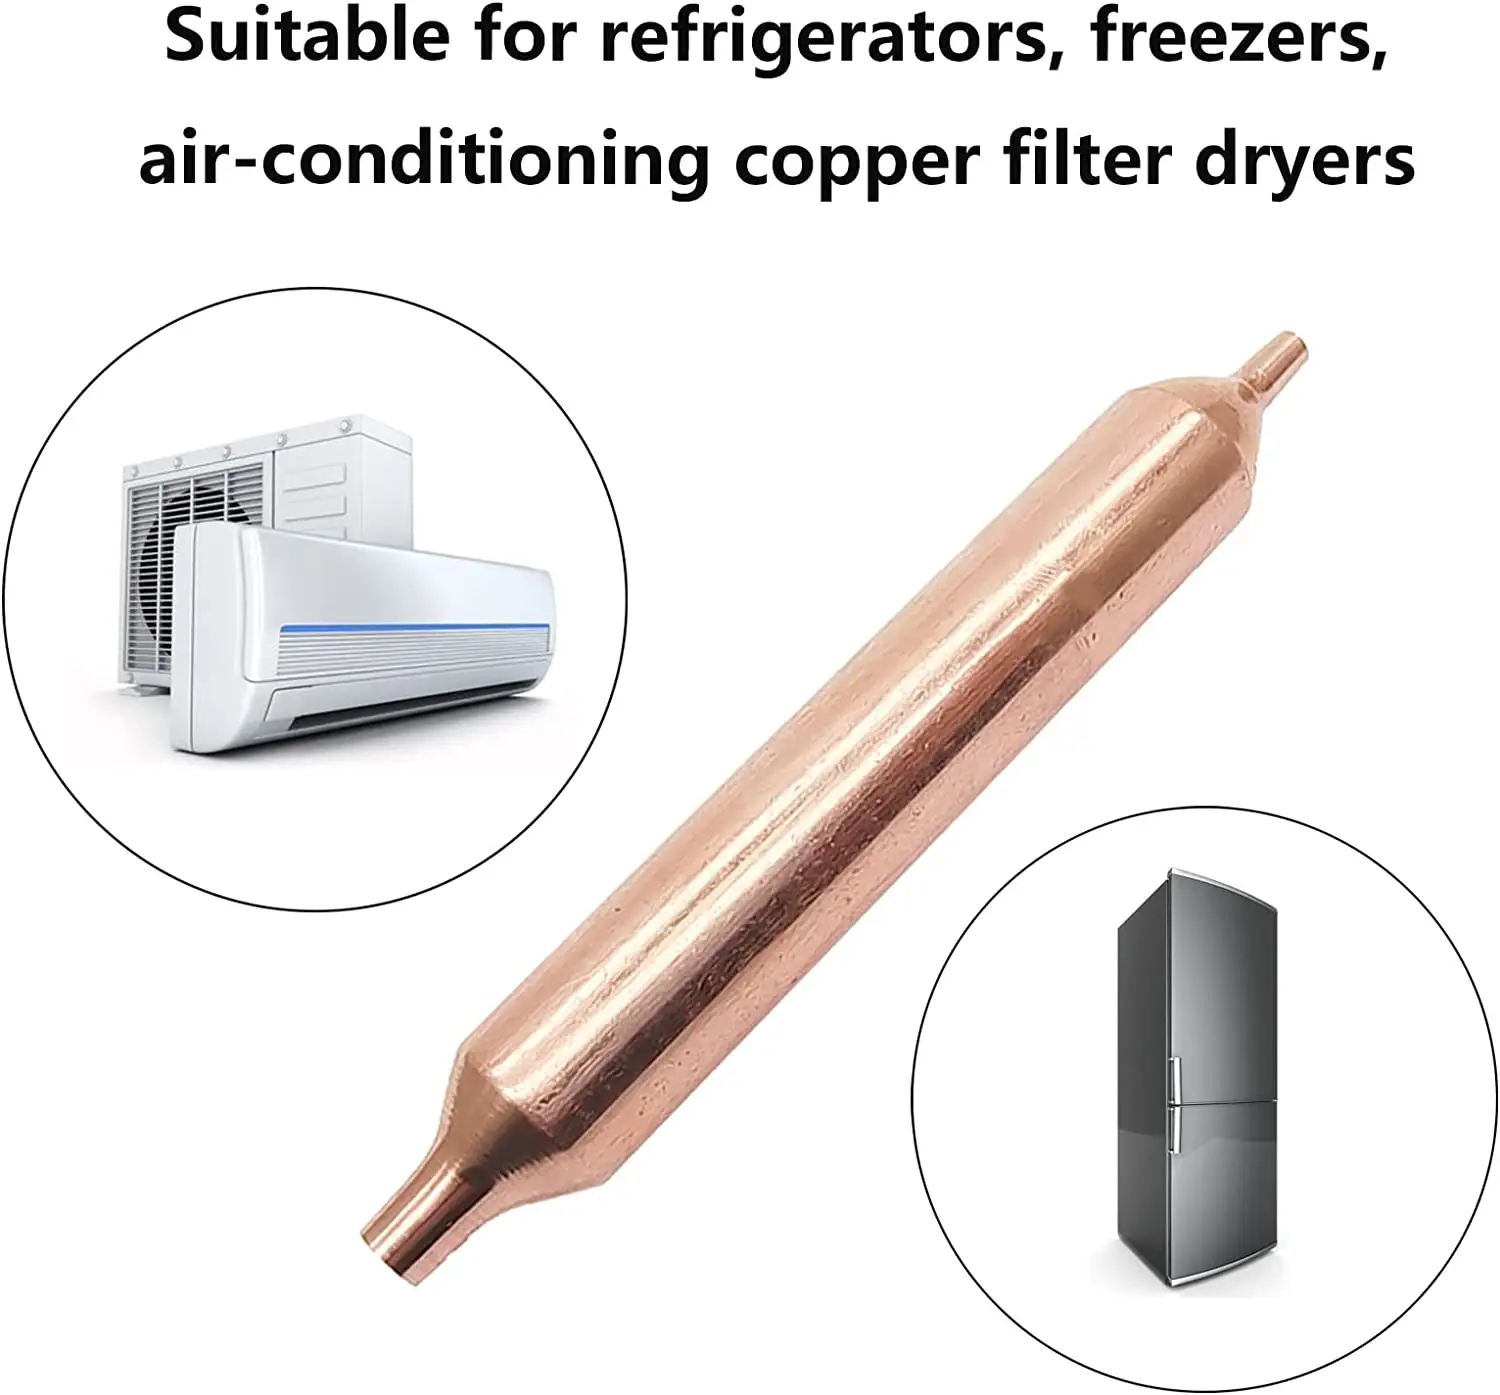 Filtro para secagem de geladeira de cobre, 36g, congelador e secador